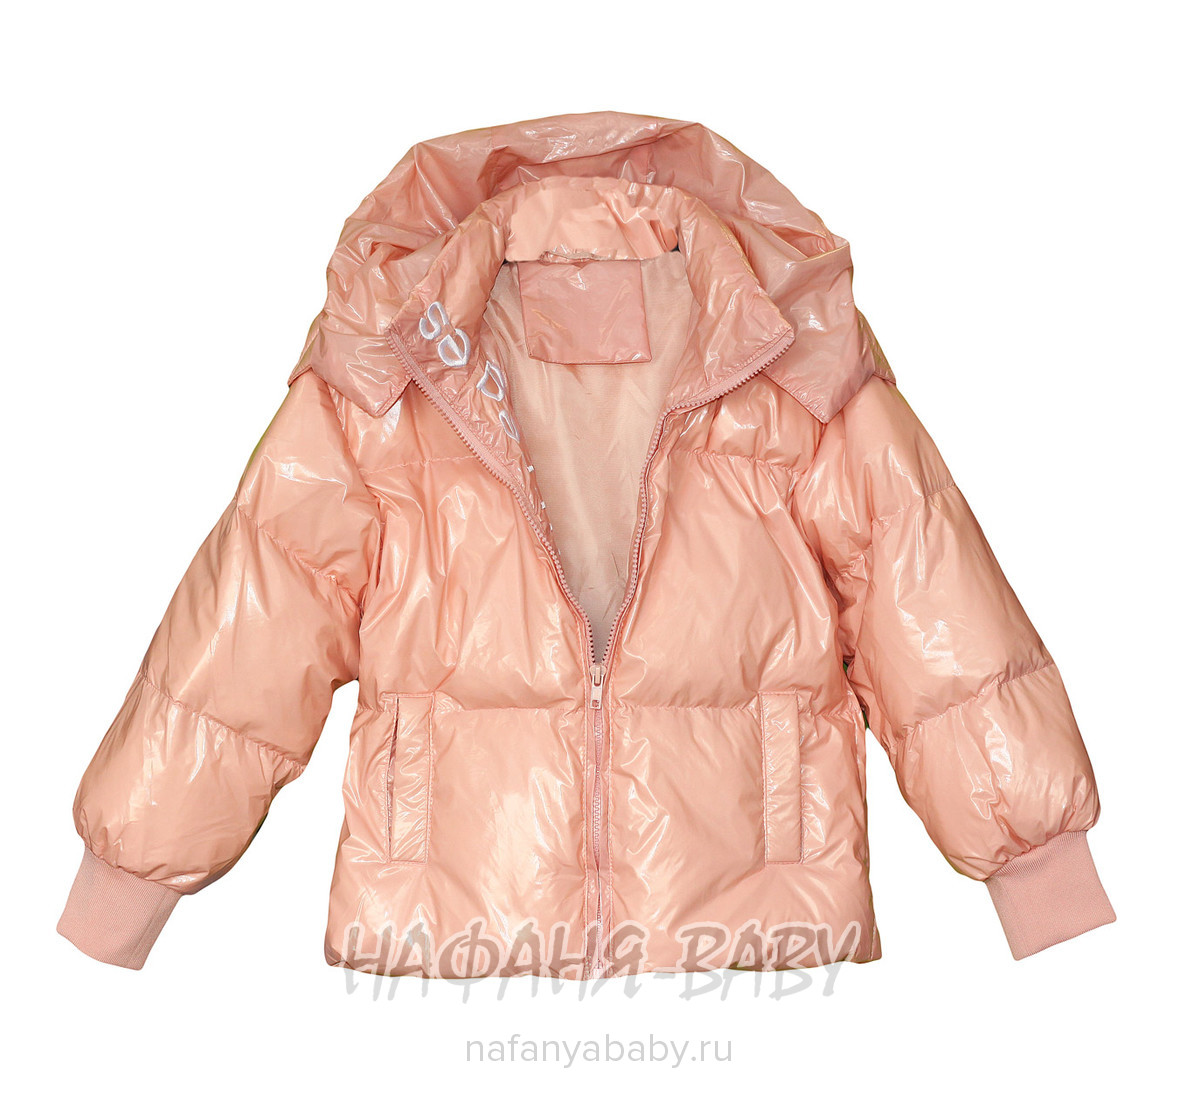 Демисезонная куртка L.Z.W.B.G., купить в интернет магазине Нафаня. арт: 9886.